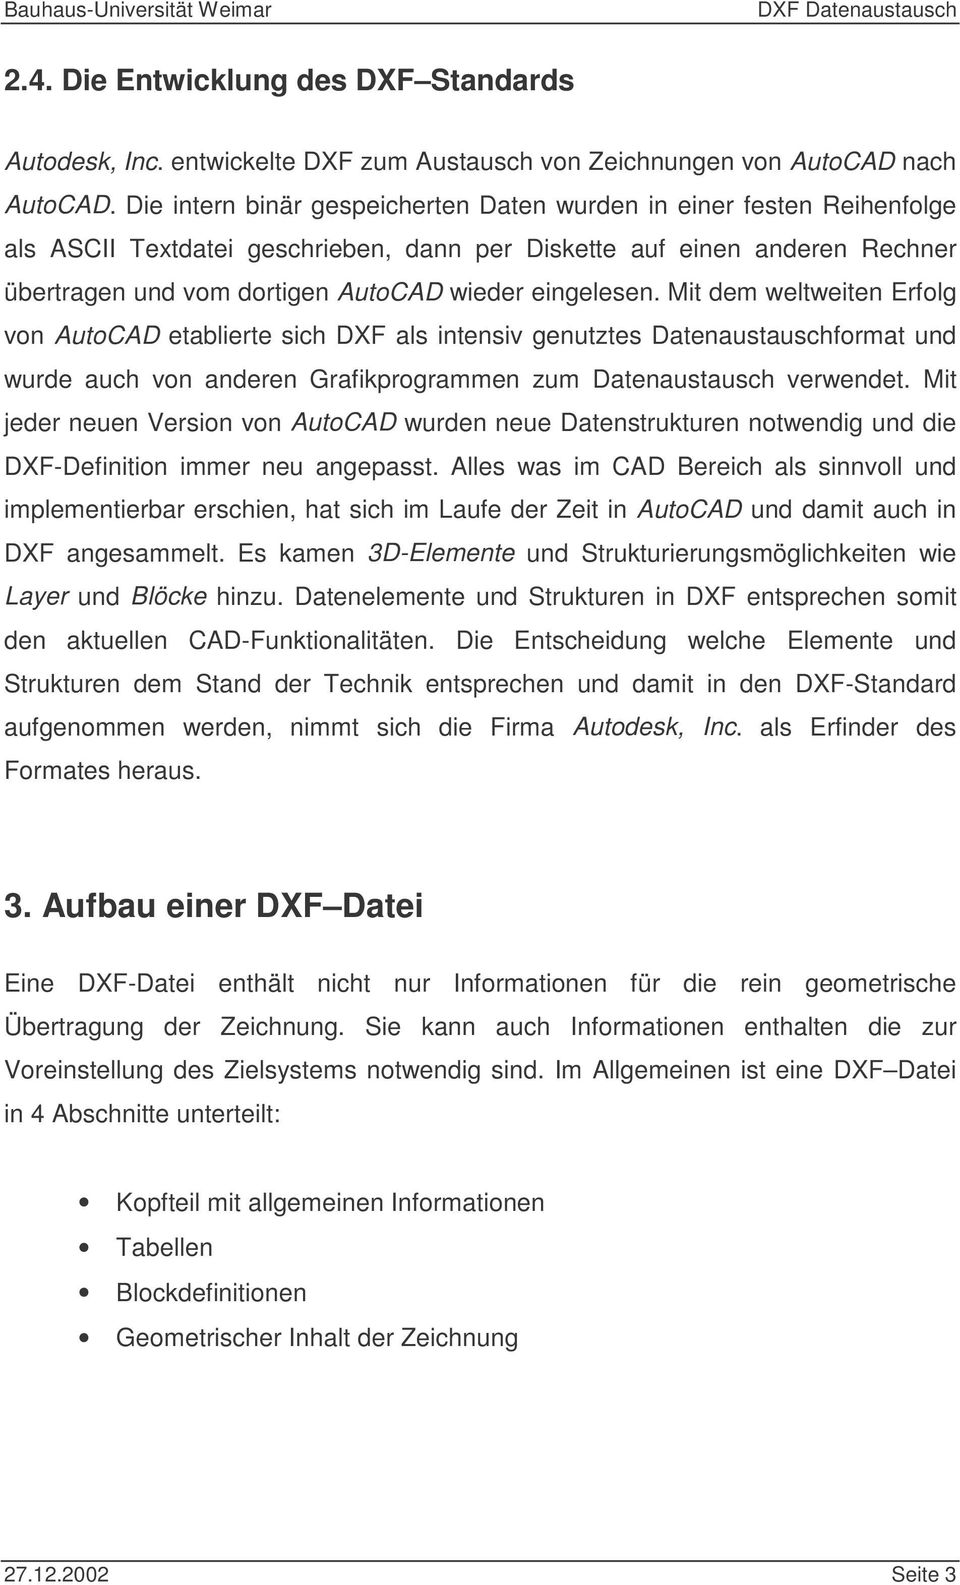 eingelesen. Mit dem weltweiten Erfolg von AutoCAD etablierte sich DXF als intensiv genutztes Datenaustauschformat und wurde auch von anderen Grafikprogrammen zum Datenaustausch verwendet.